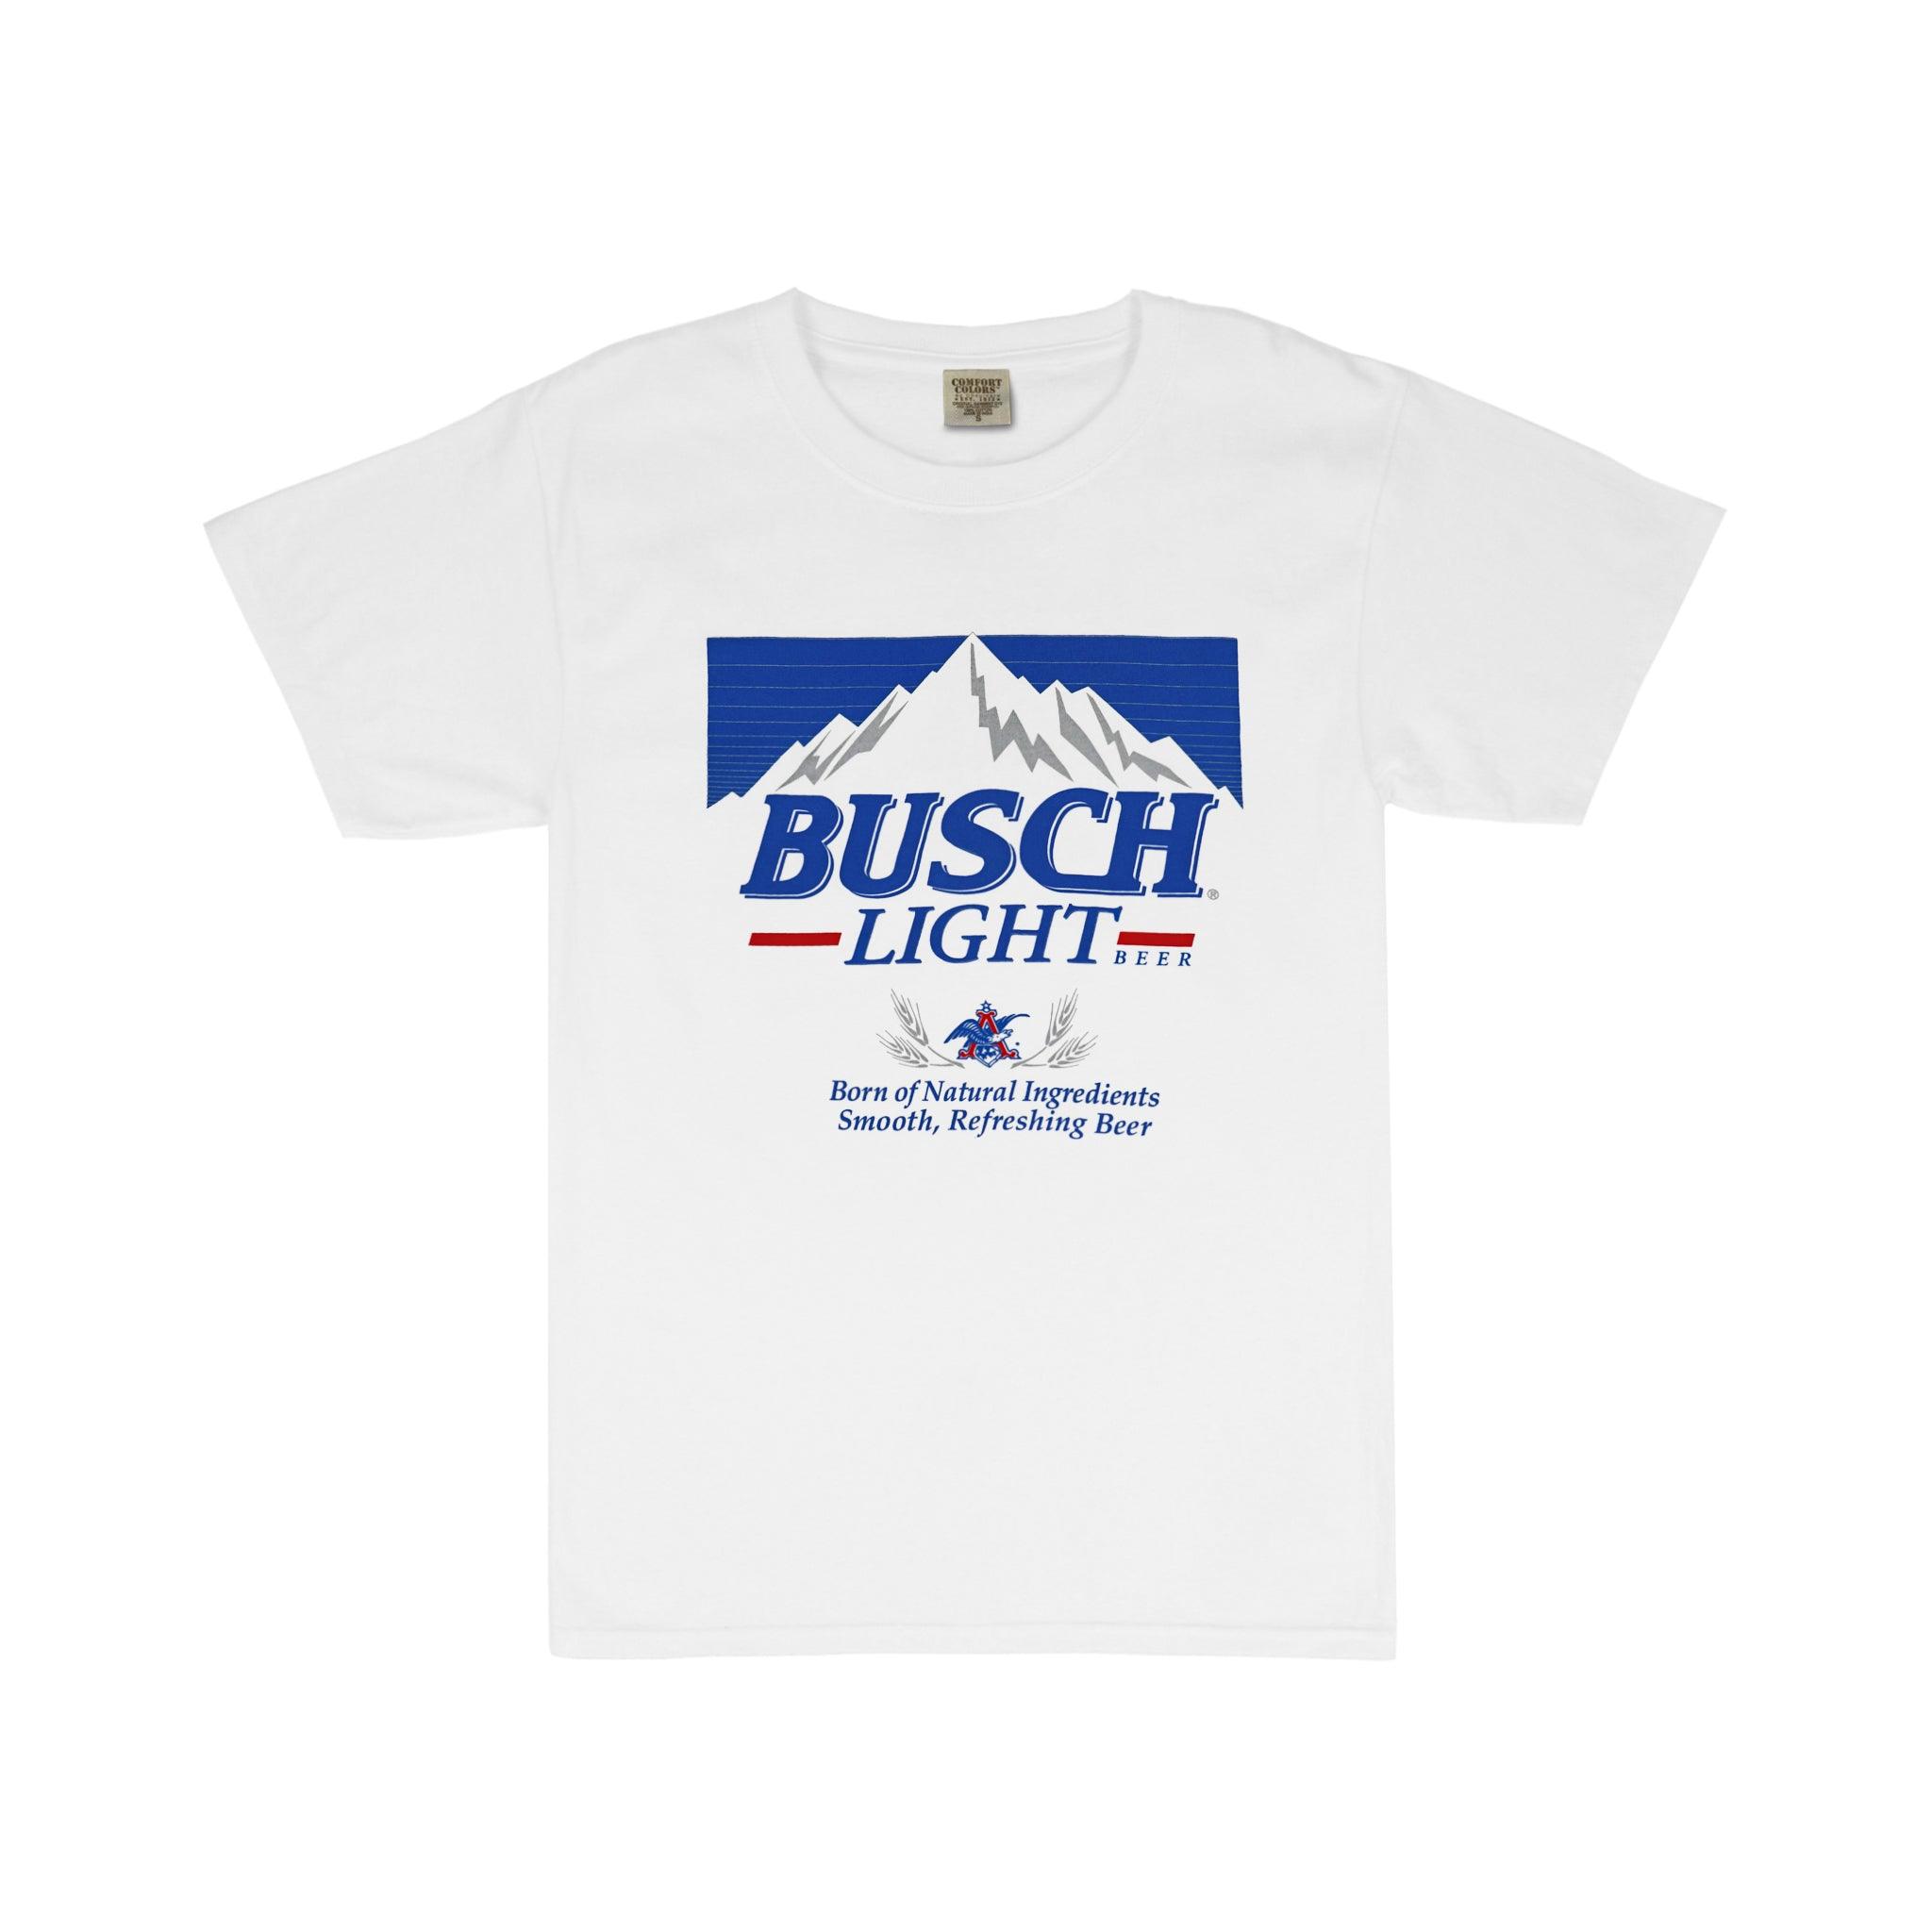 Busch Light Retro Label T Shirt